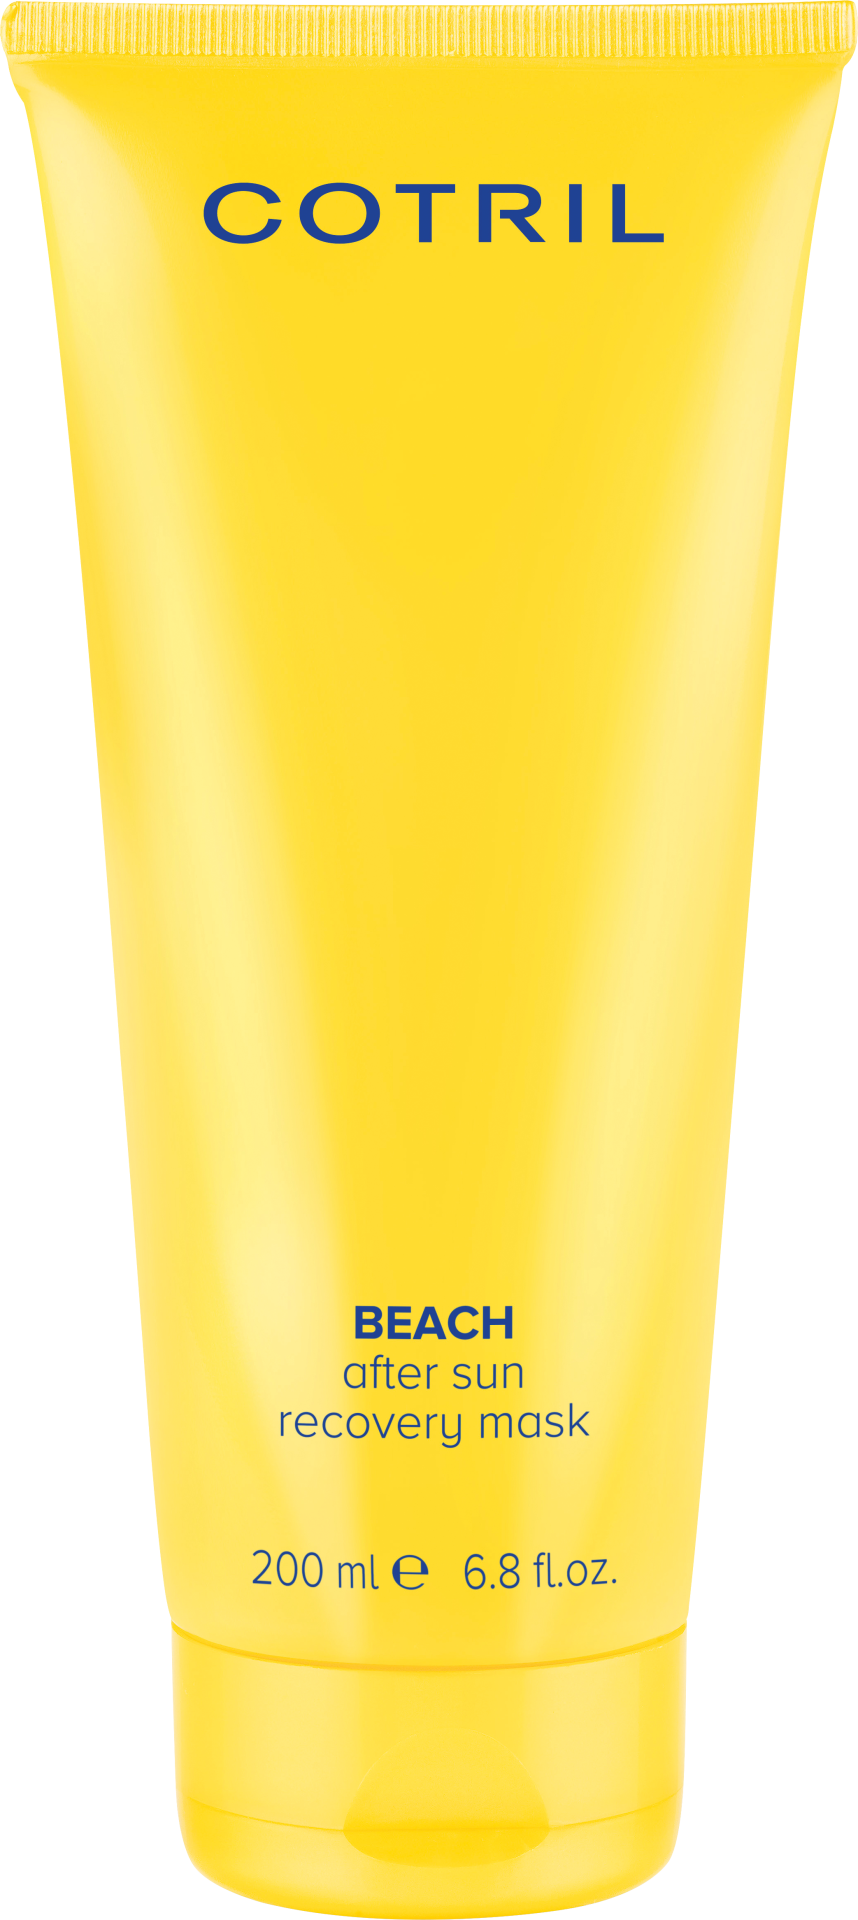 COTRIL BEACH MASK 200 ml 2350eu Special winactie: win een Cotril beach set